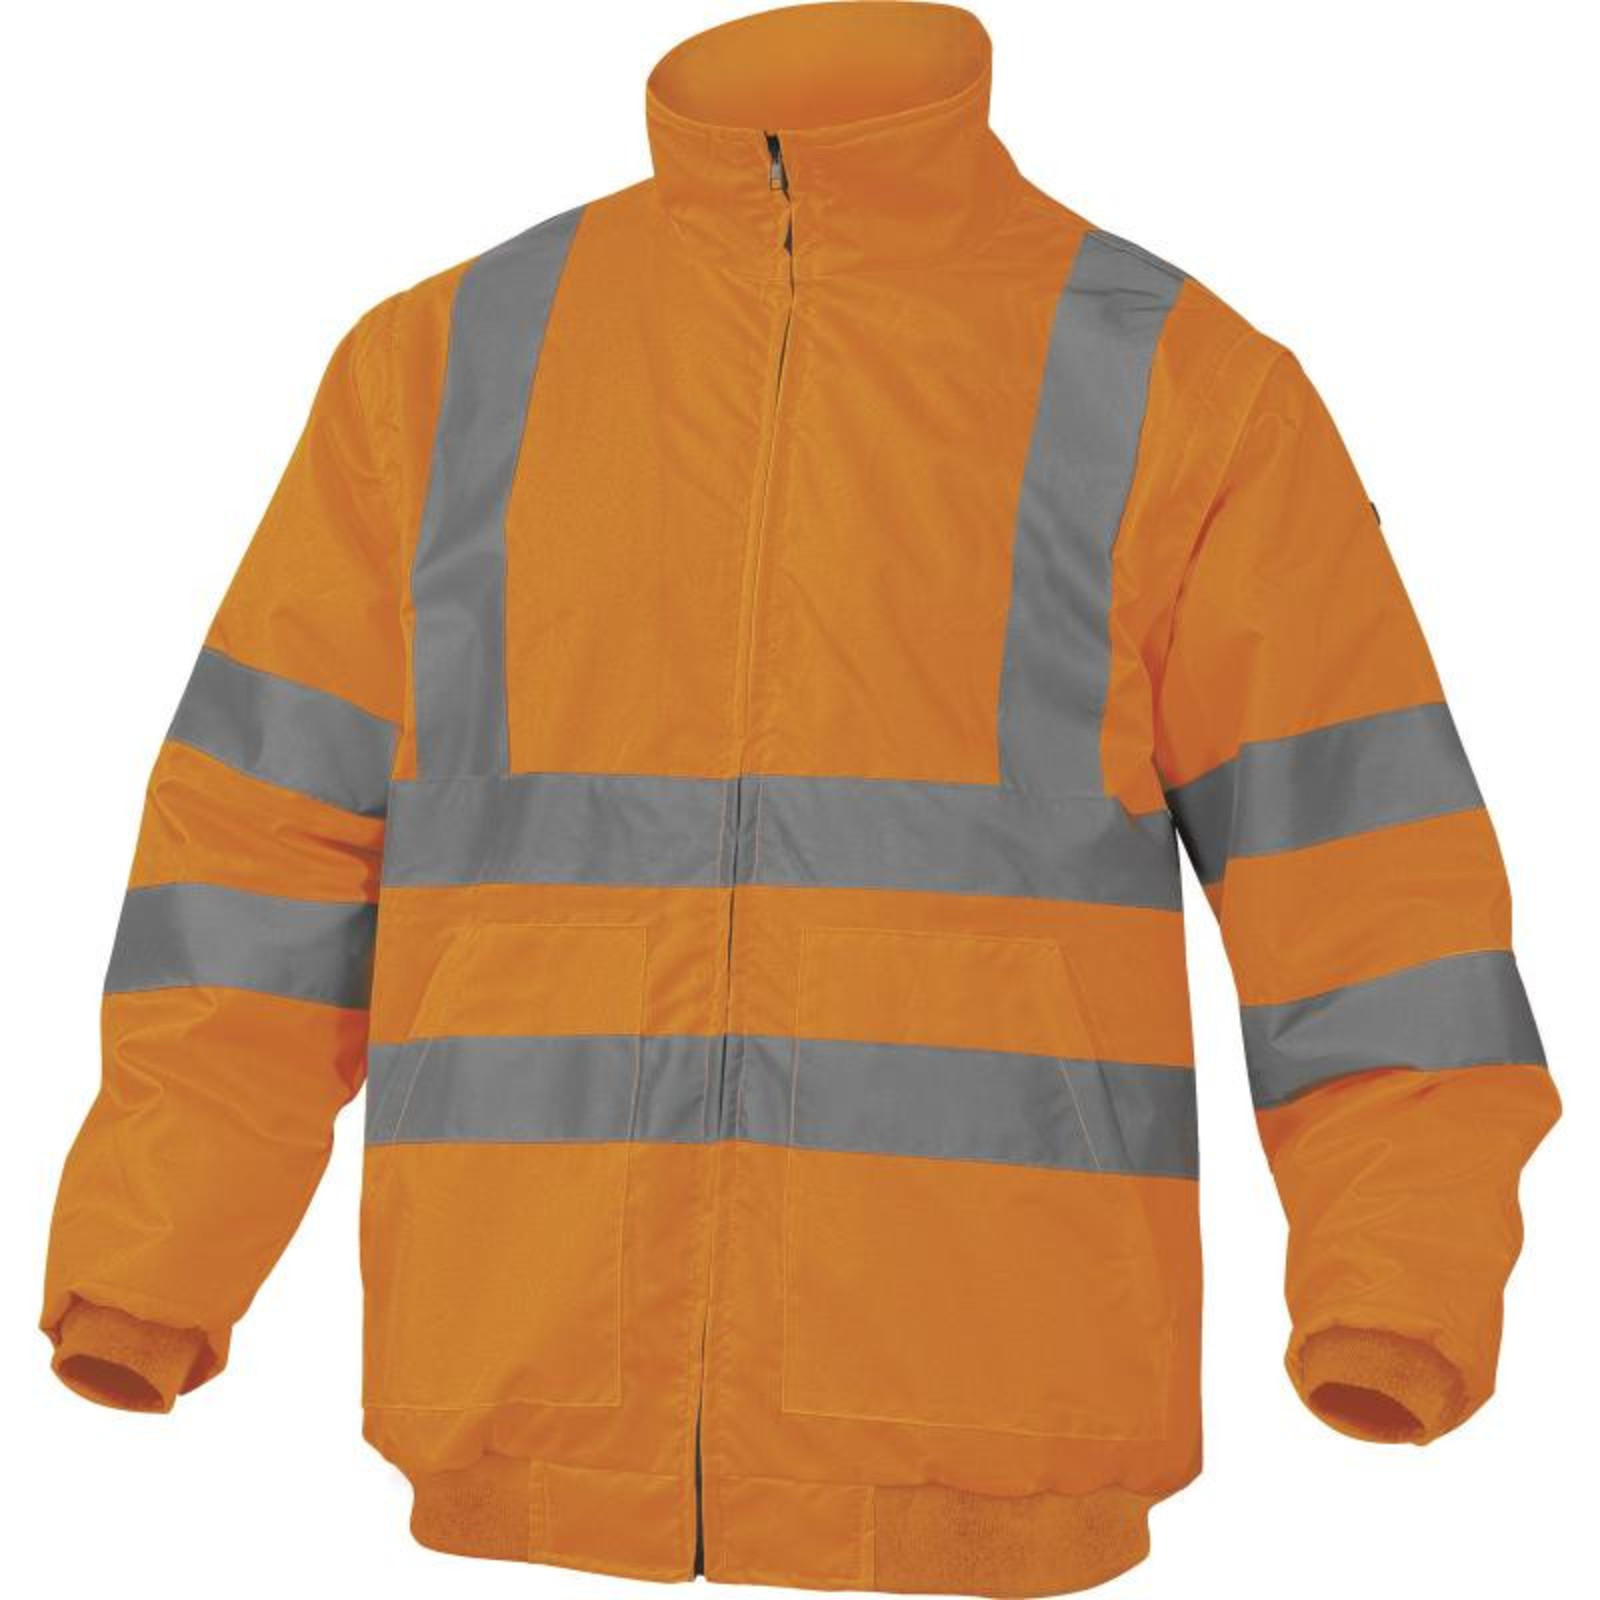 Zimná reflexná bunda Delta Plus Reno 2v1 - veľkosť: S, farba: fluorescenčno oranžová